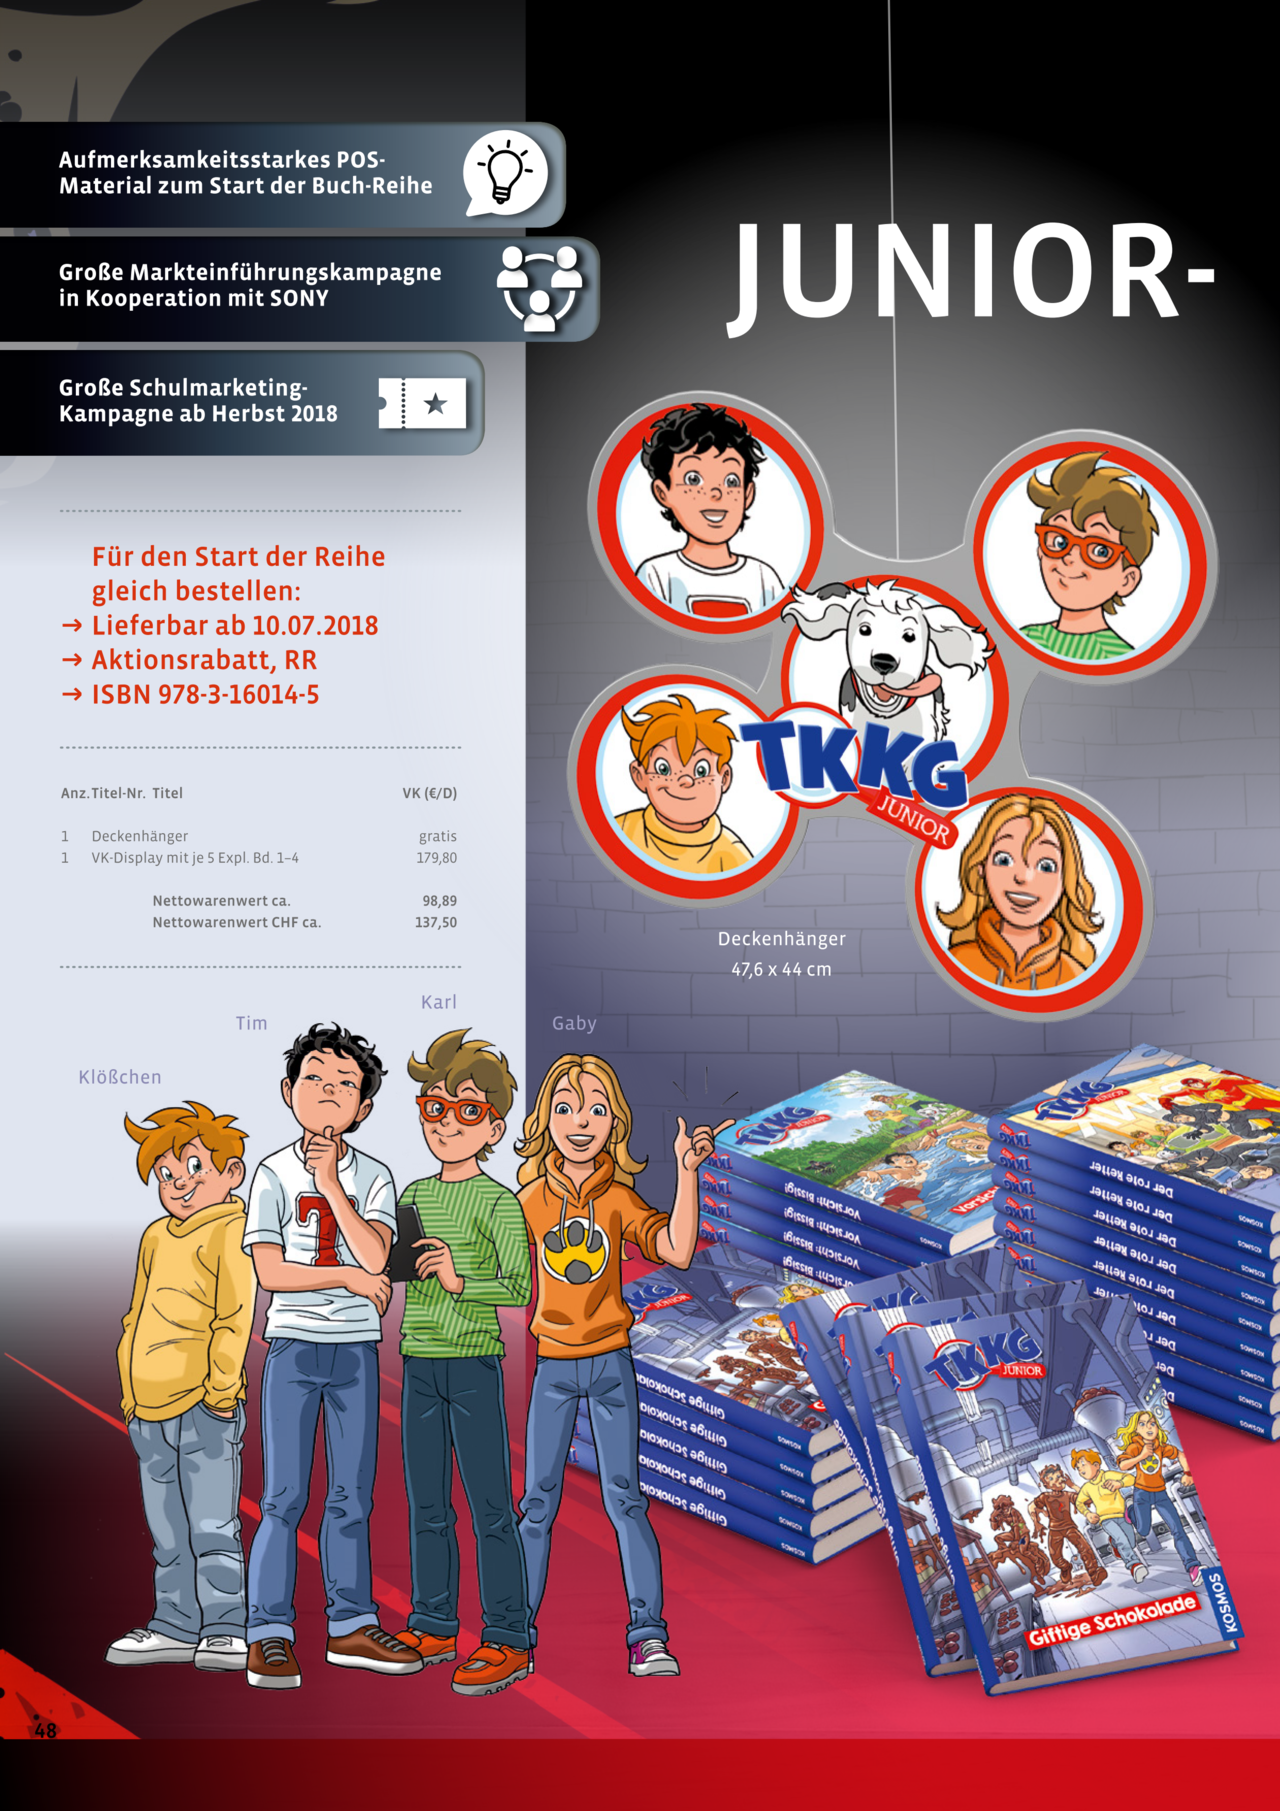 TKKG Junior — In der aktuellen Herbstvorschau informiert der&hellip;